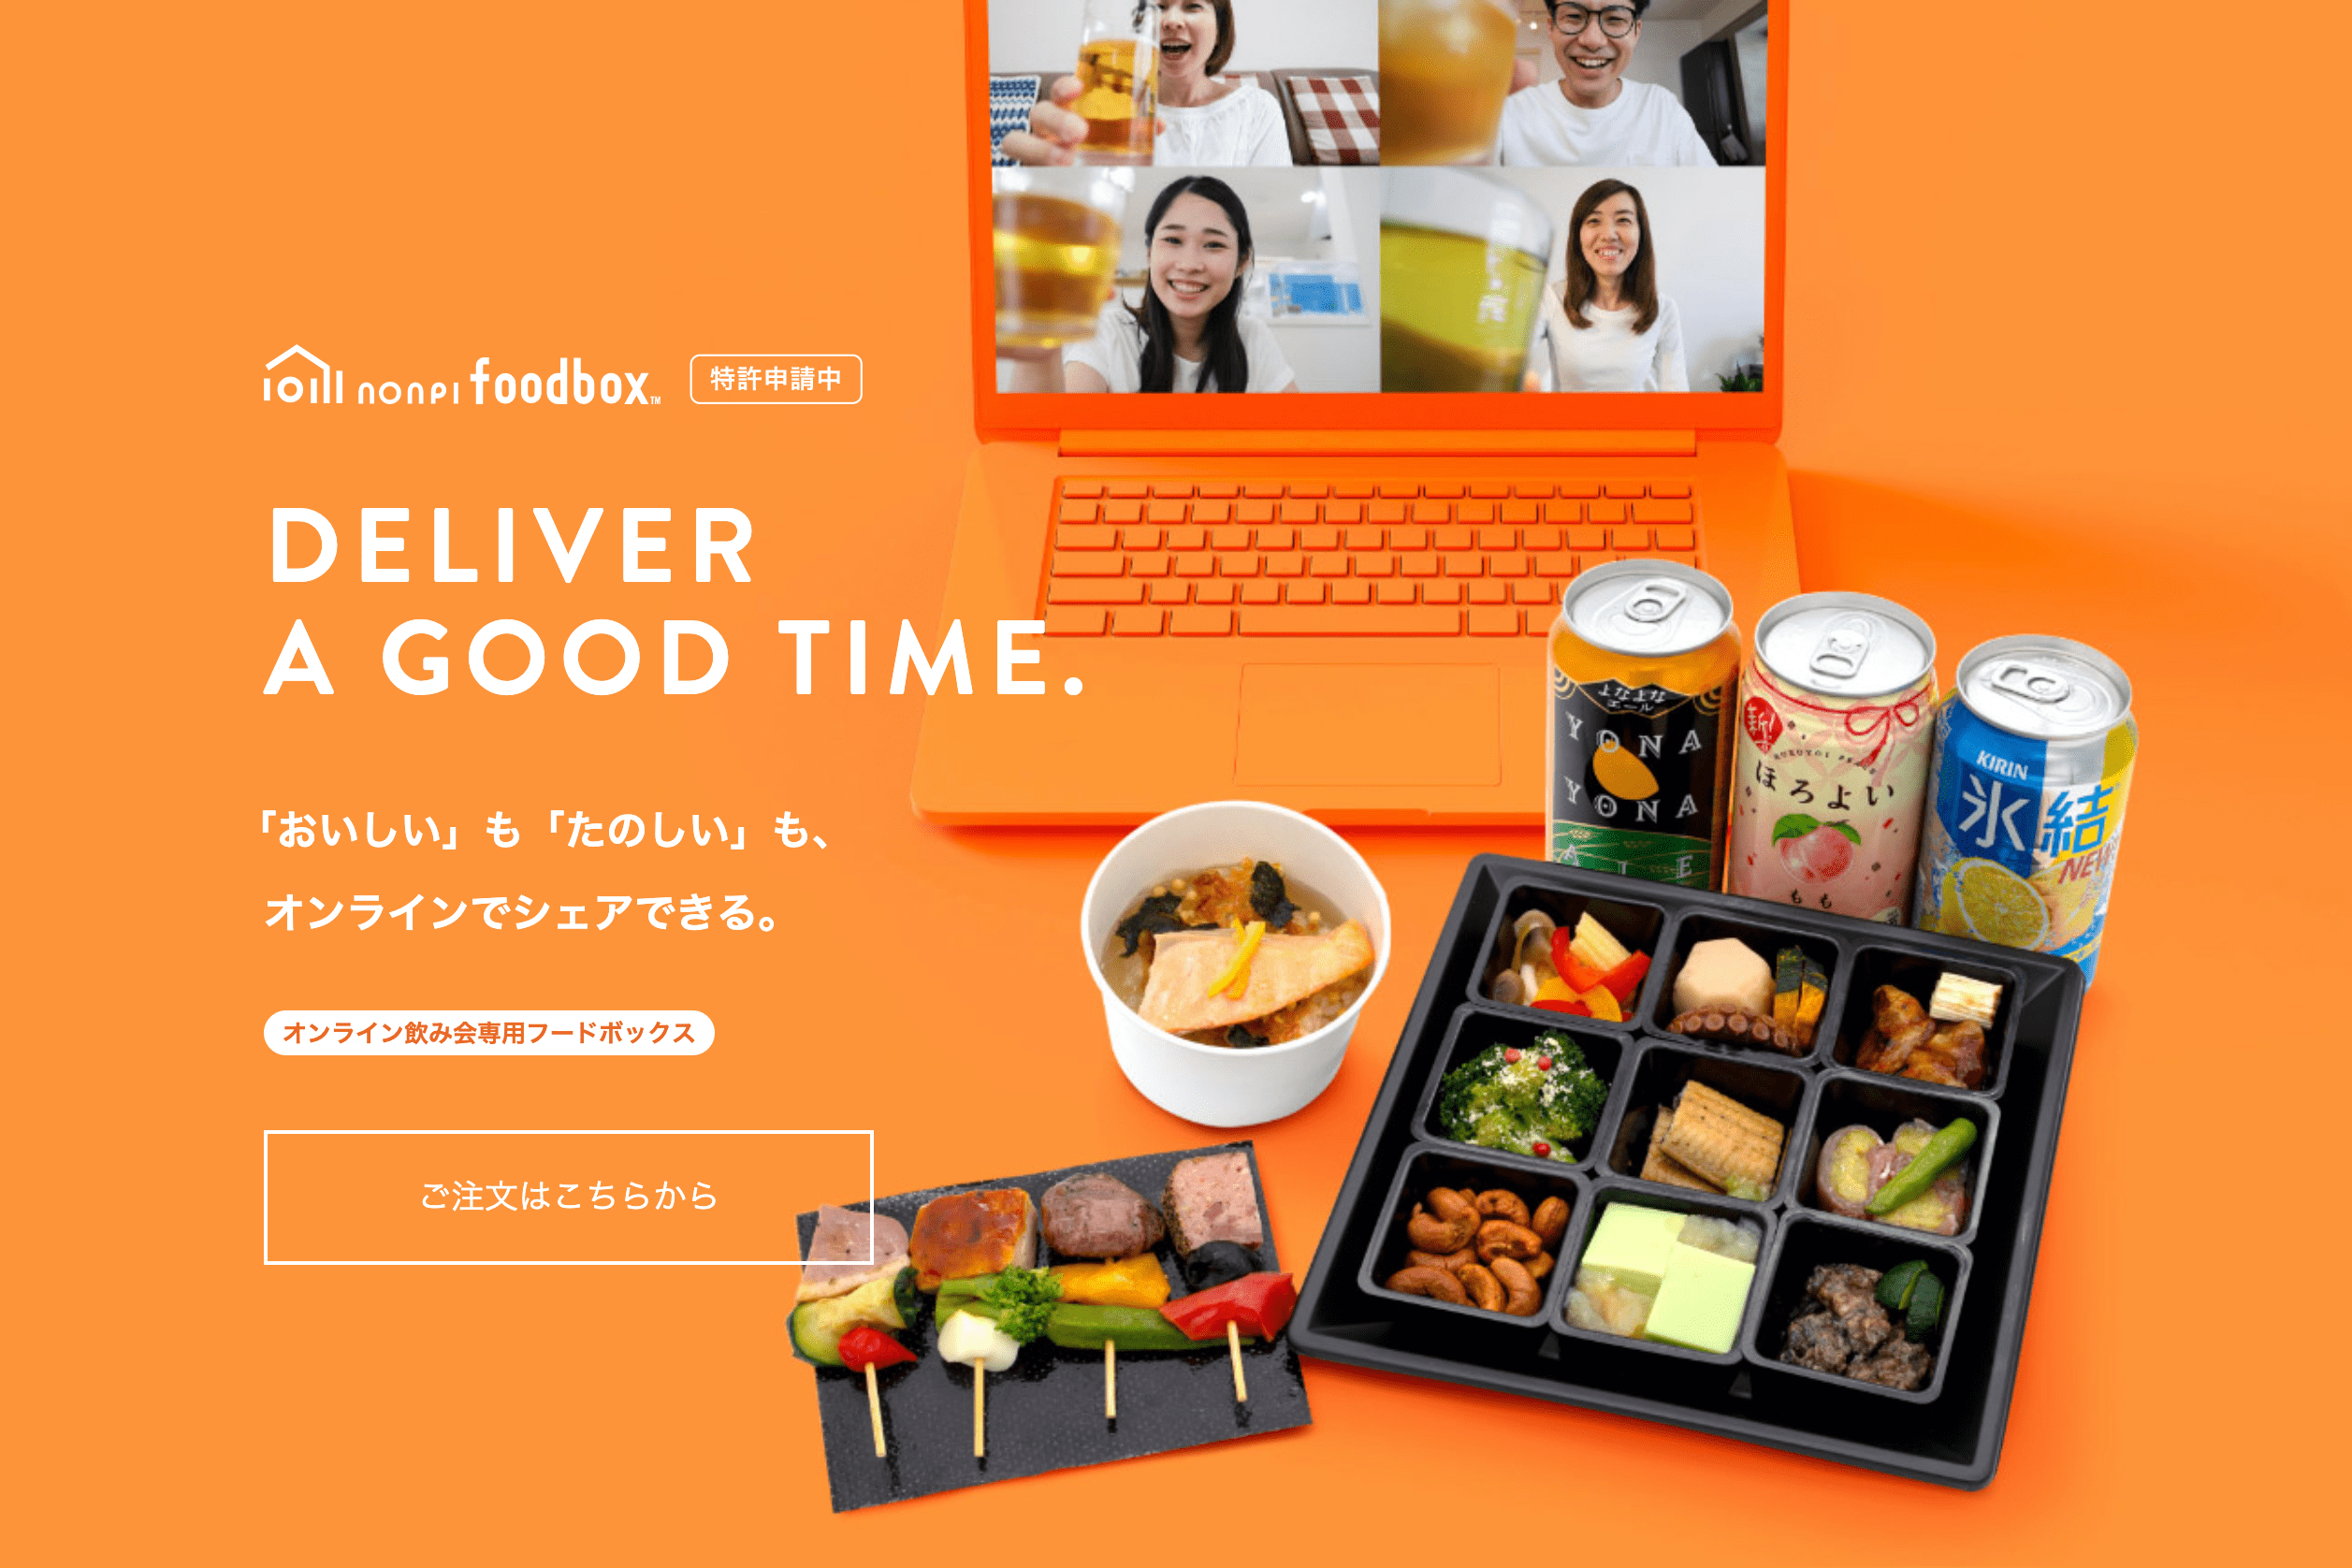 ノンピが展開する「nonpi foodbox」はオンライン飲み会に参加する社員の自宅に食事とドリンクの入った専用のフードボックスが届く。2020年8月のリリースから約4ケ月で1000社以上に活用された 